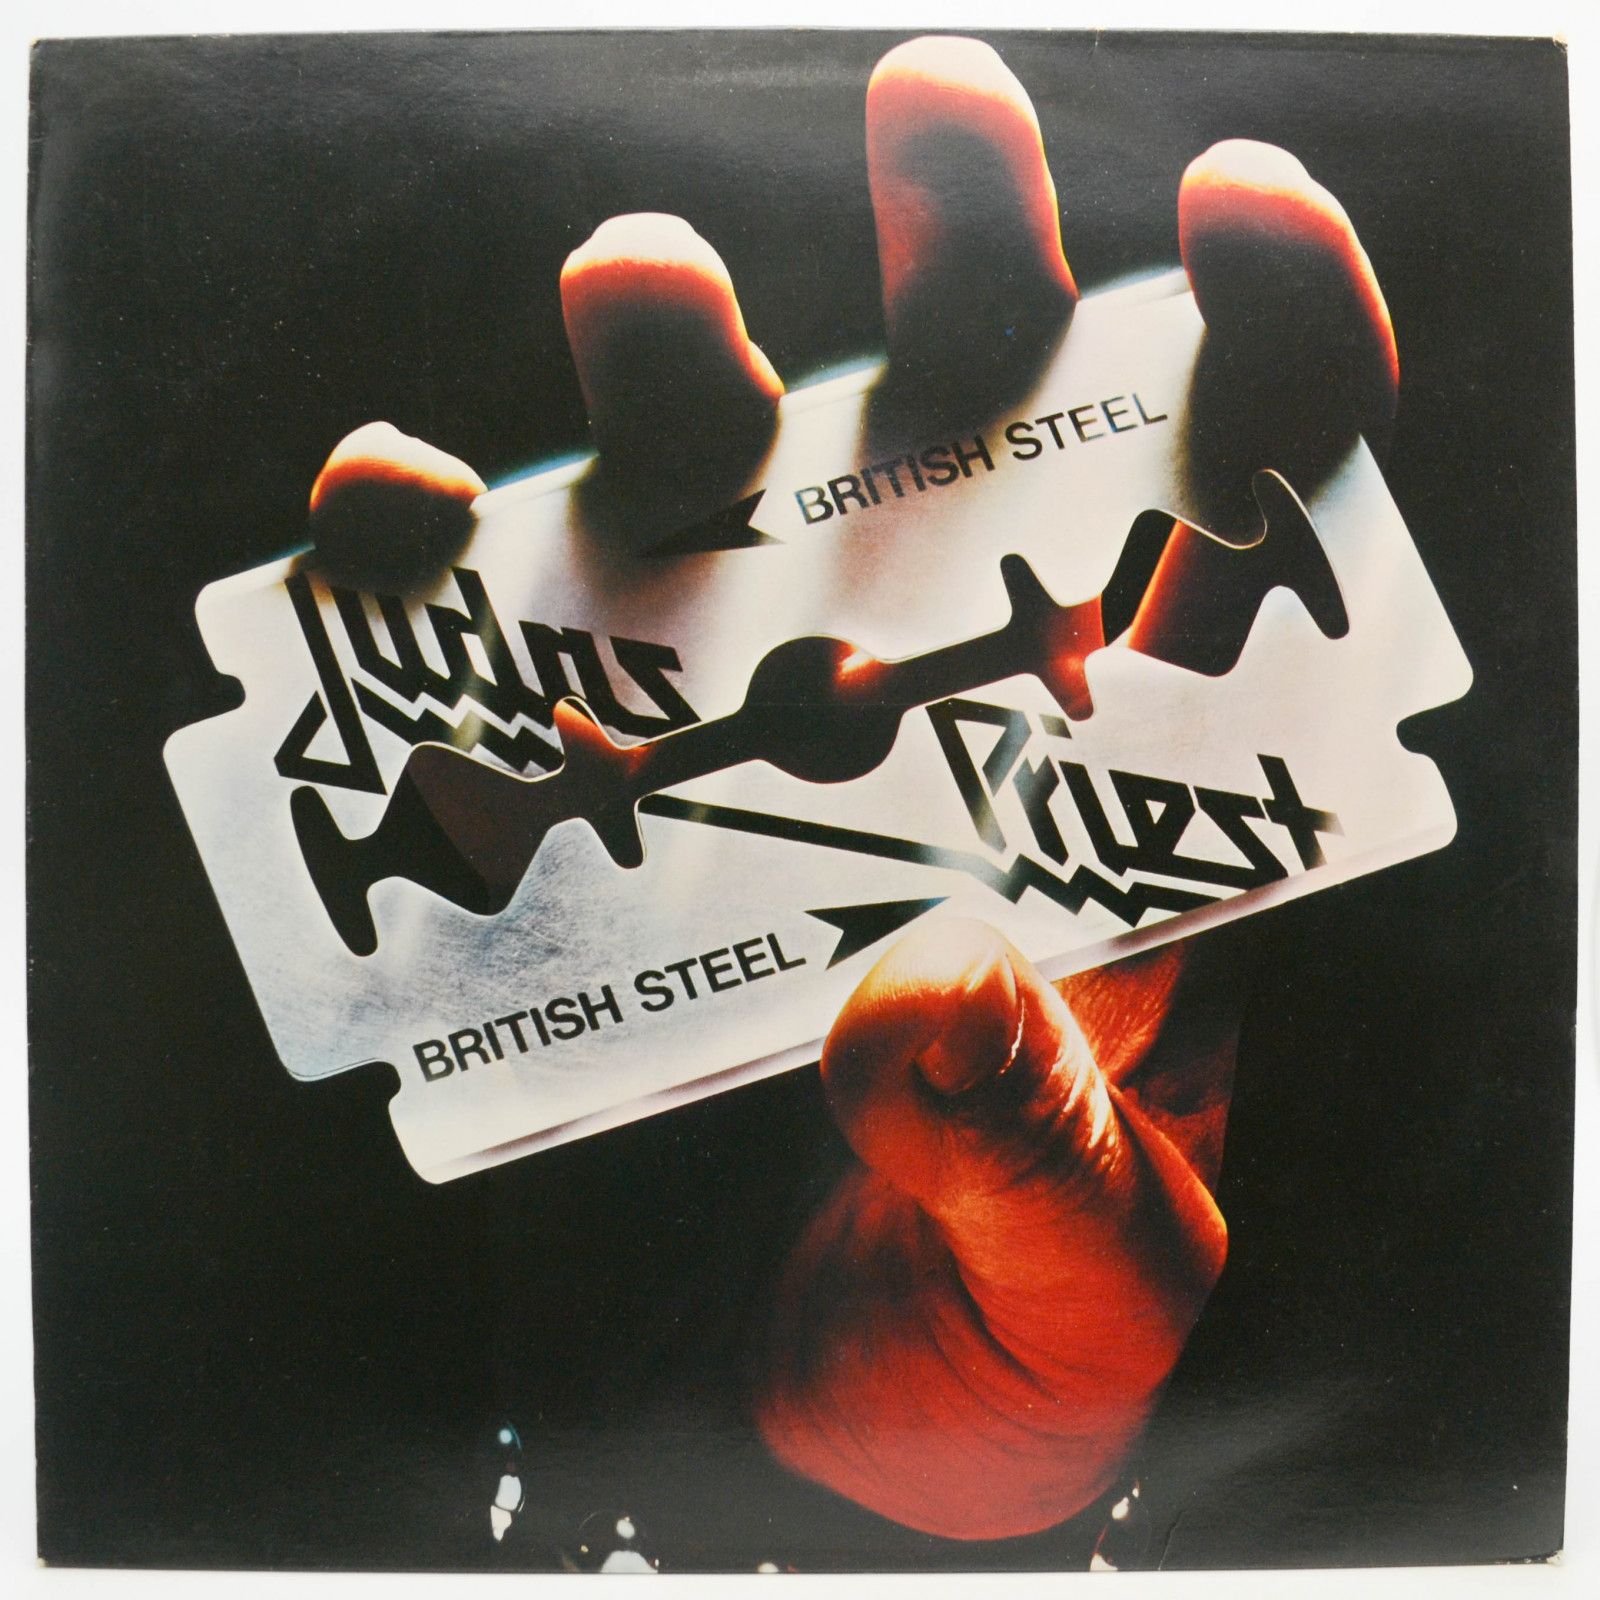 Judas Priest — British Steel, 1980